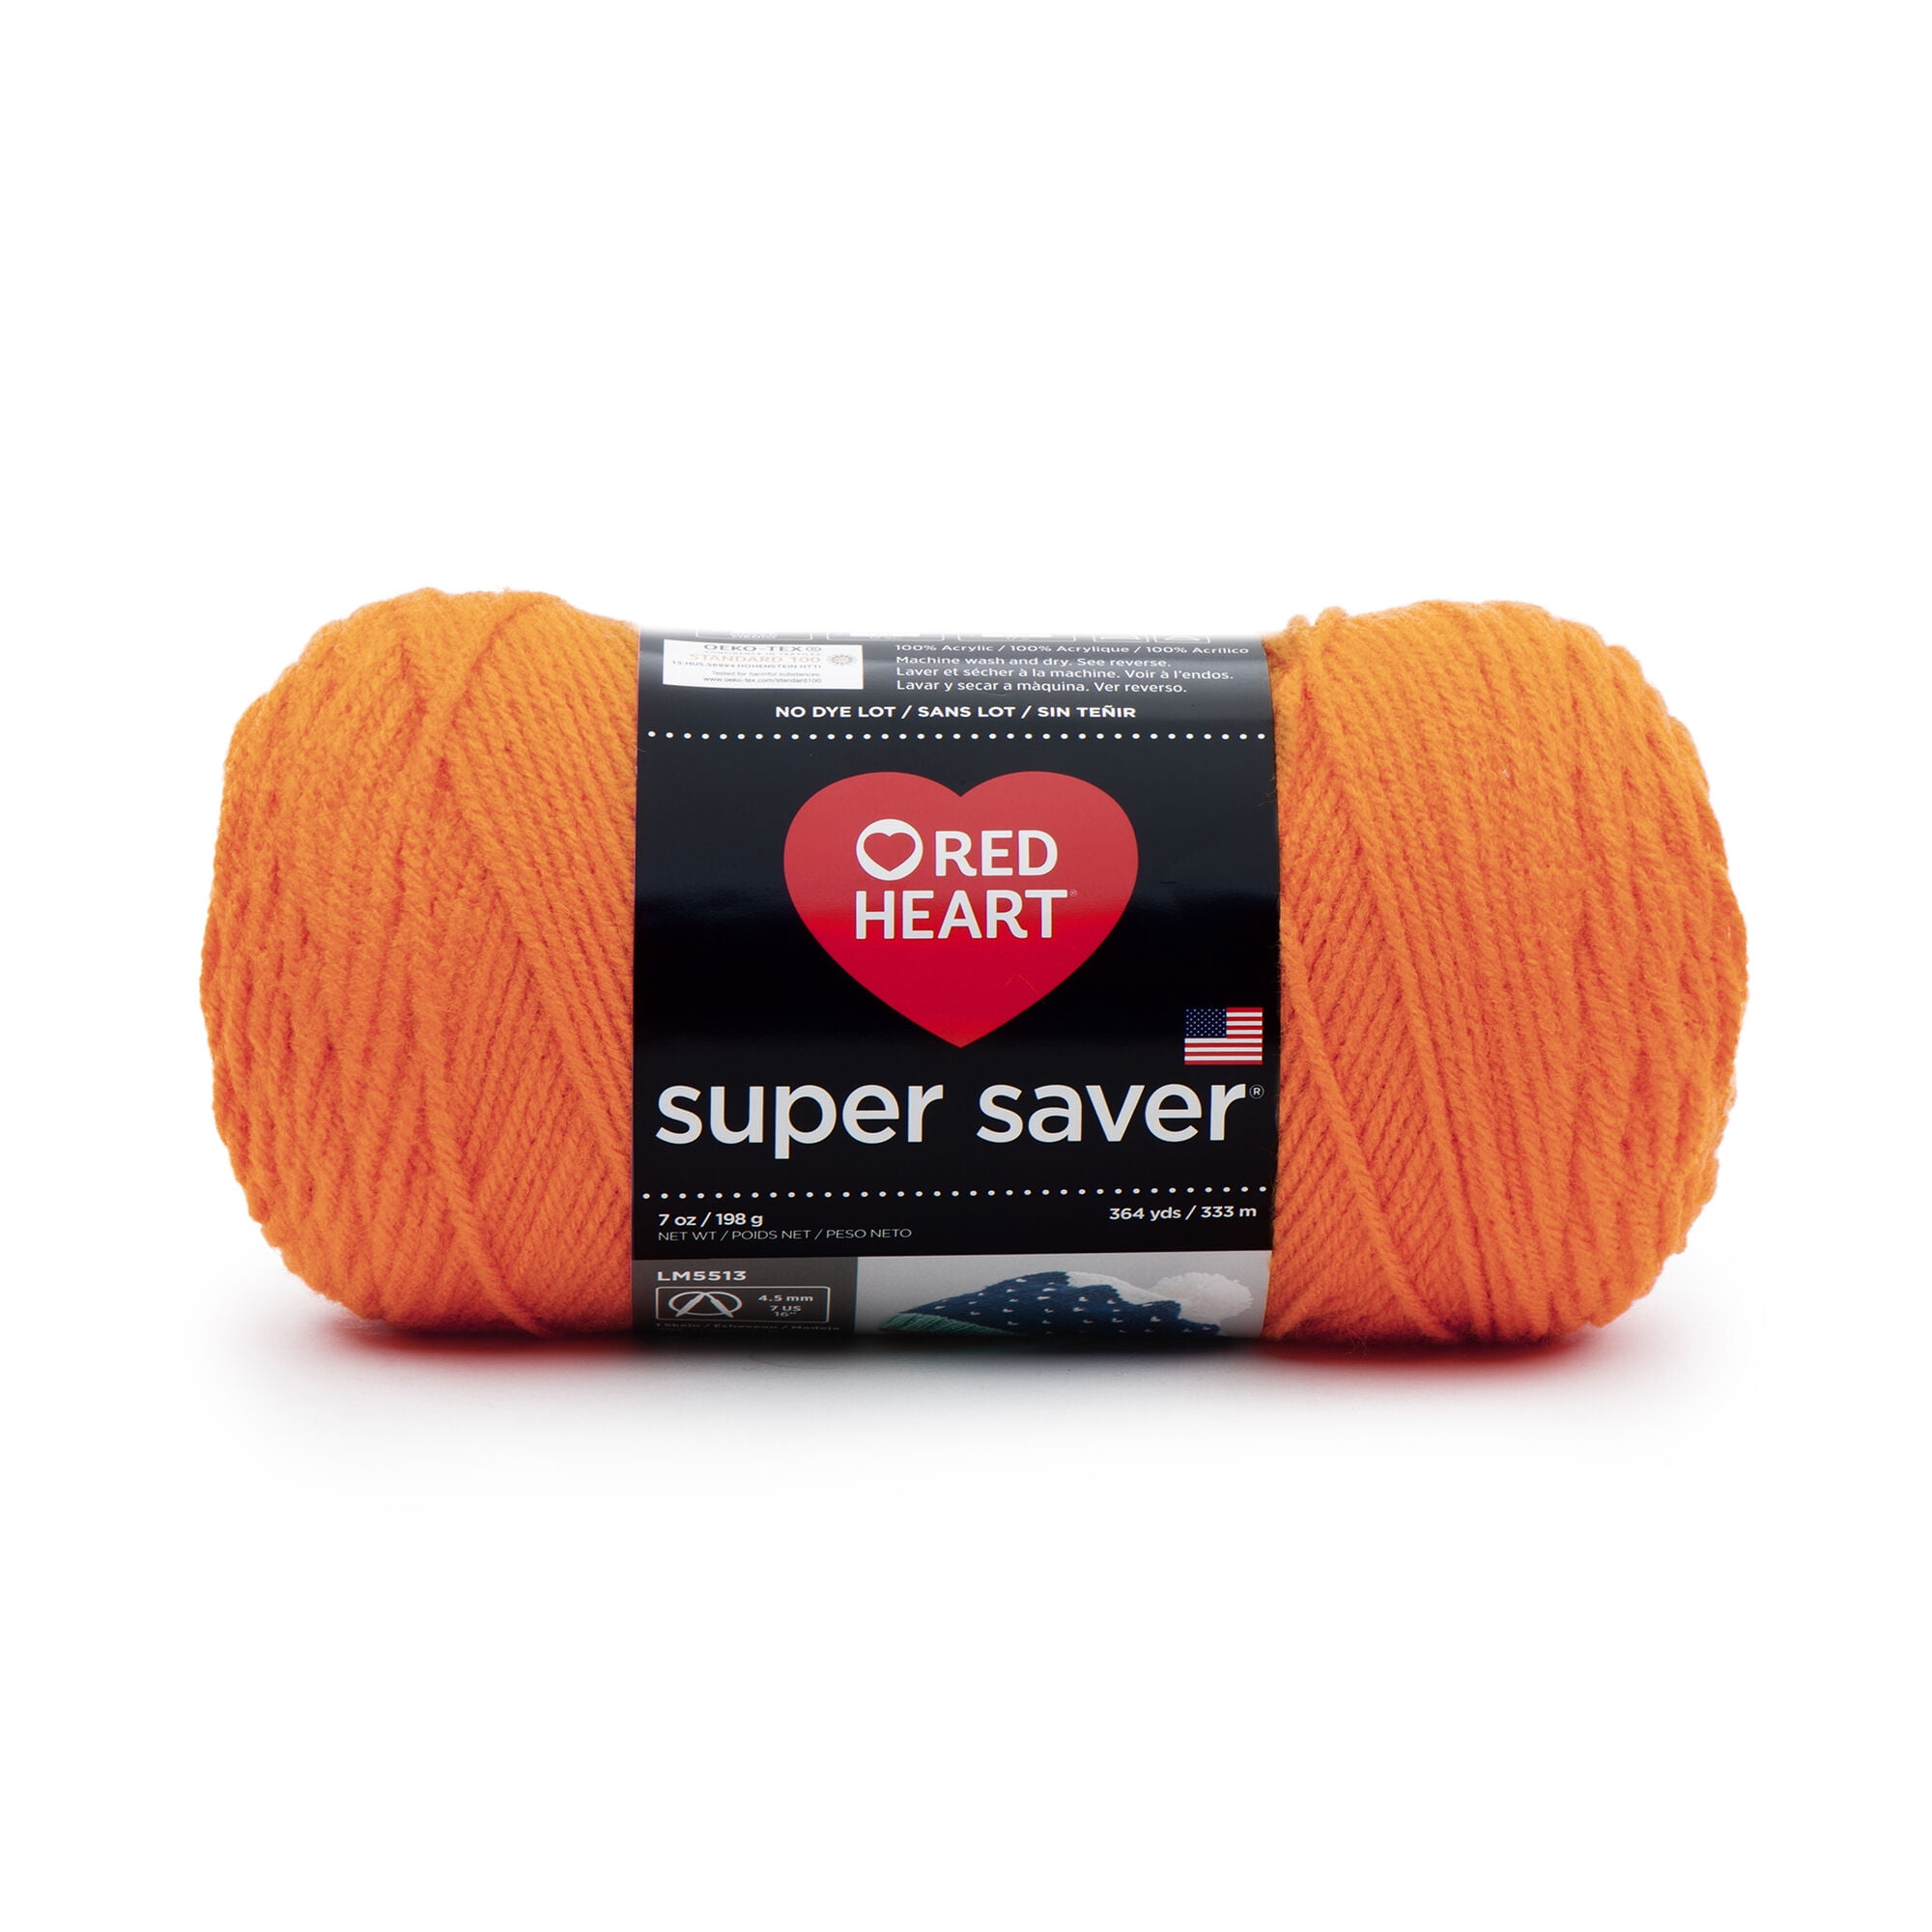 Red Heart Super Medium Acrylic Yarn, Fall 7oz/198g, Yards Walmart.com